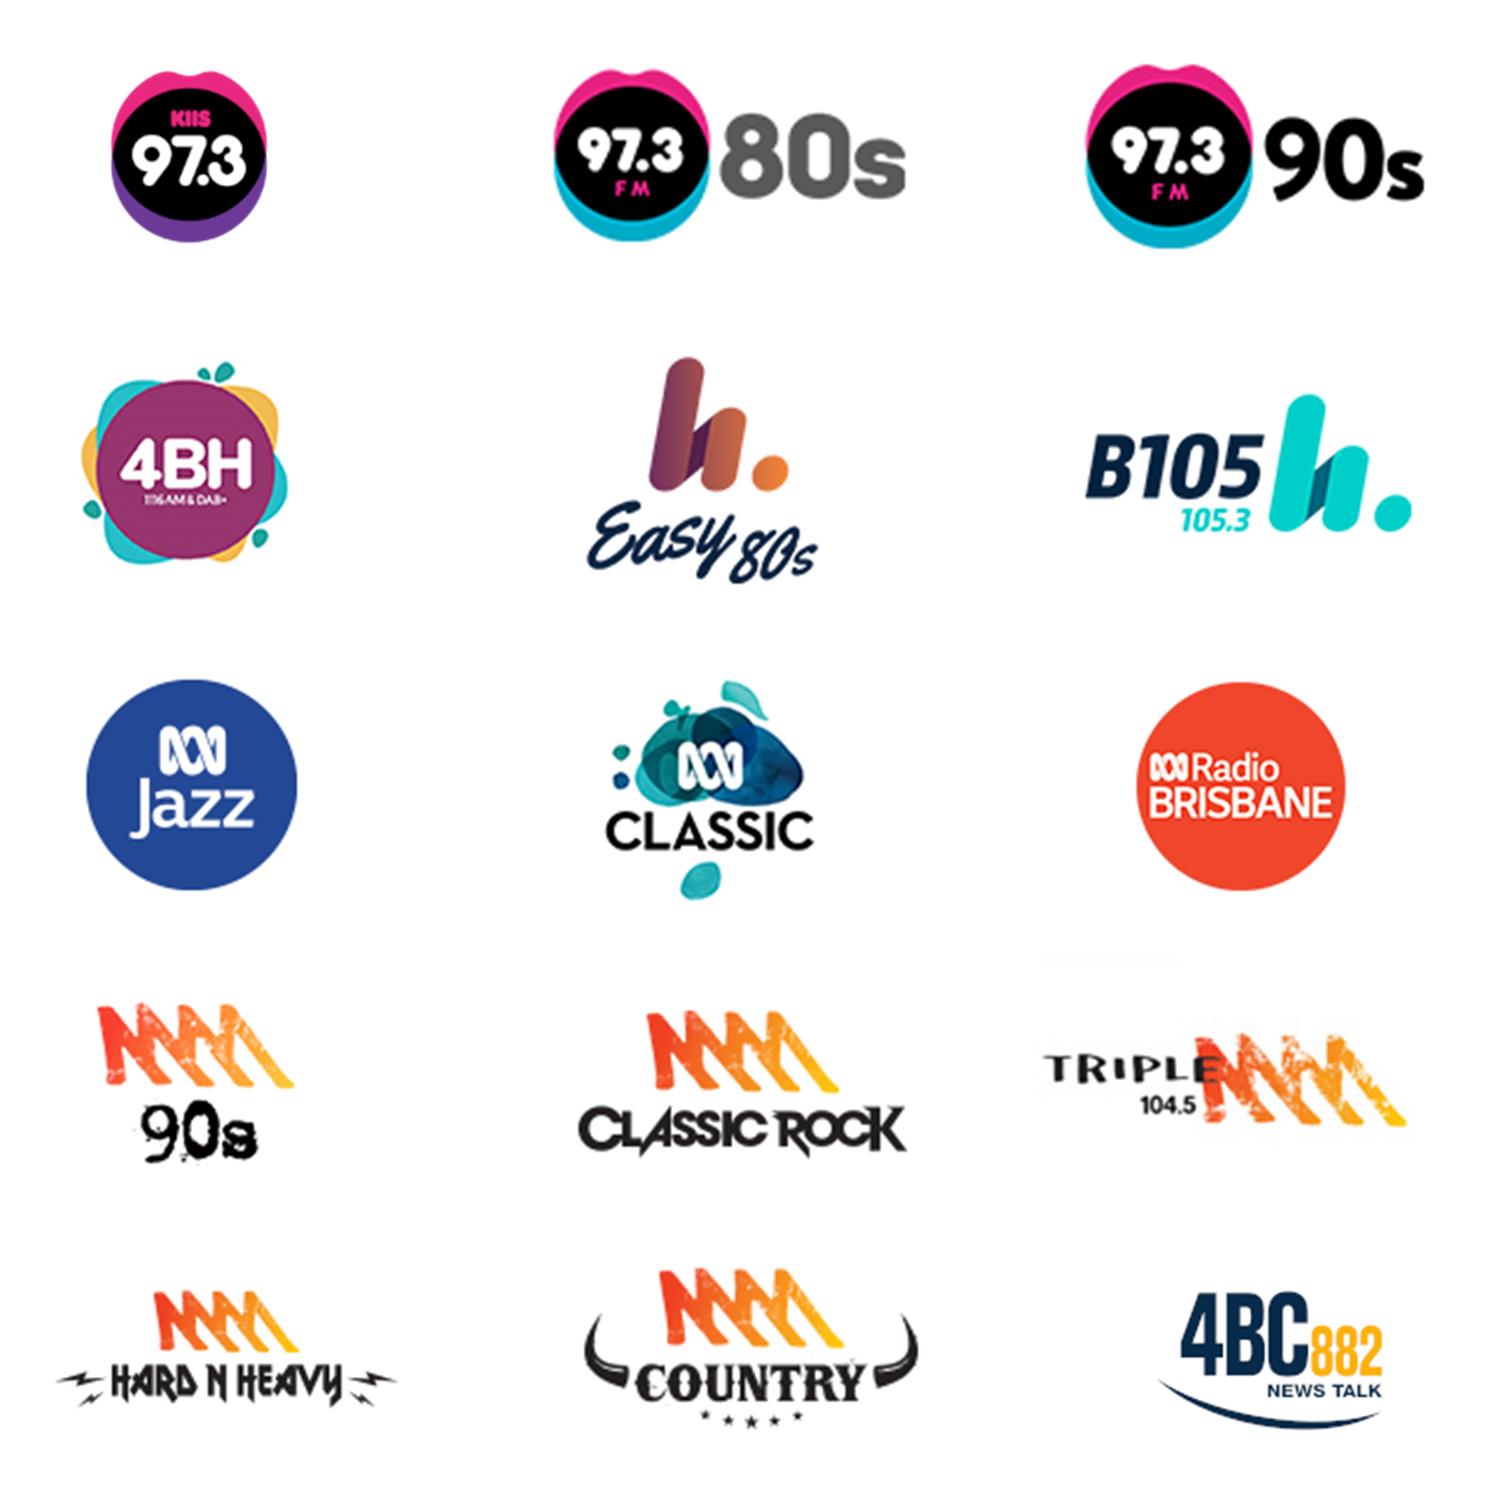 DAB+ Digital Radio Channels